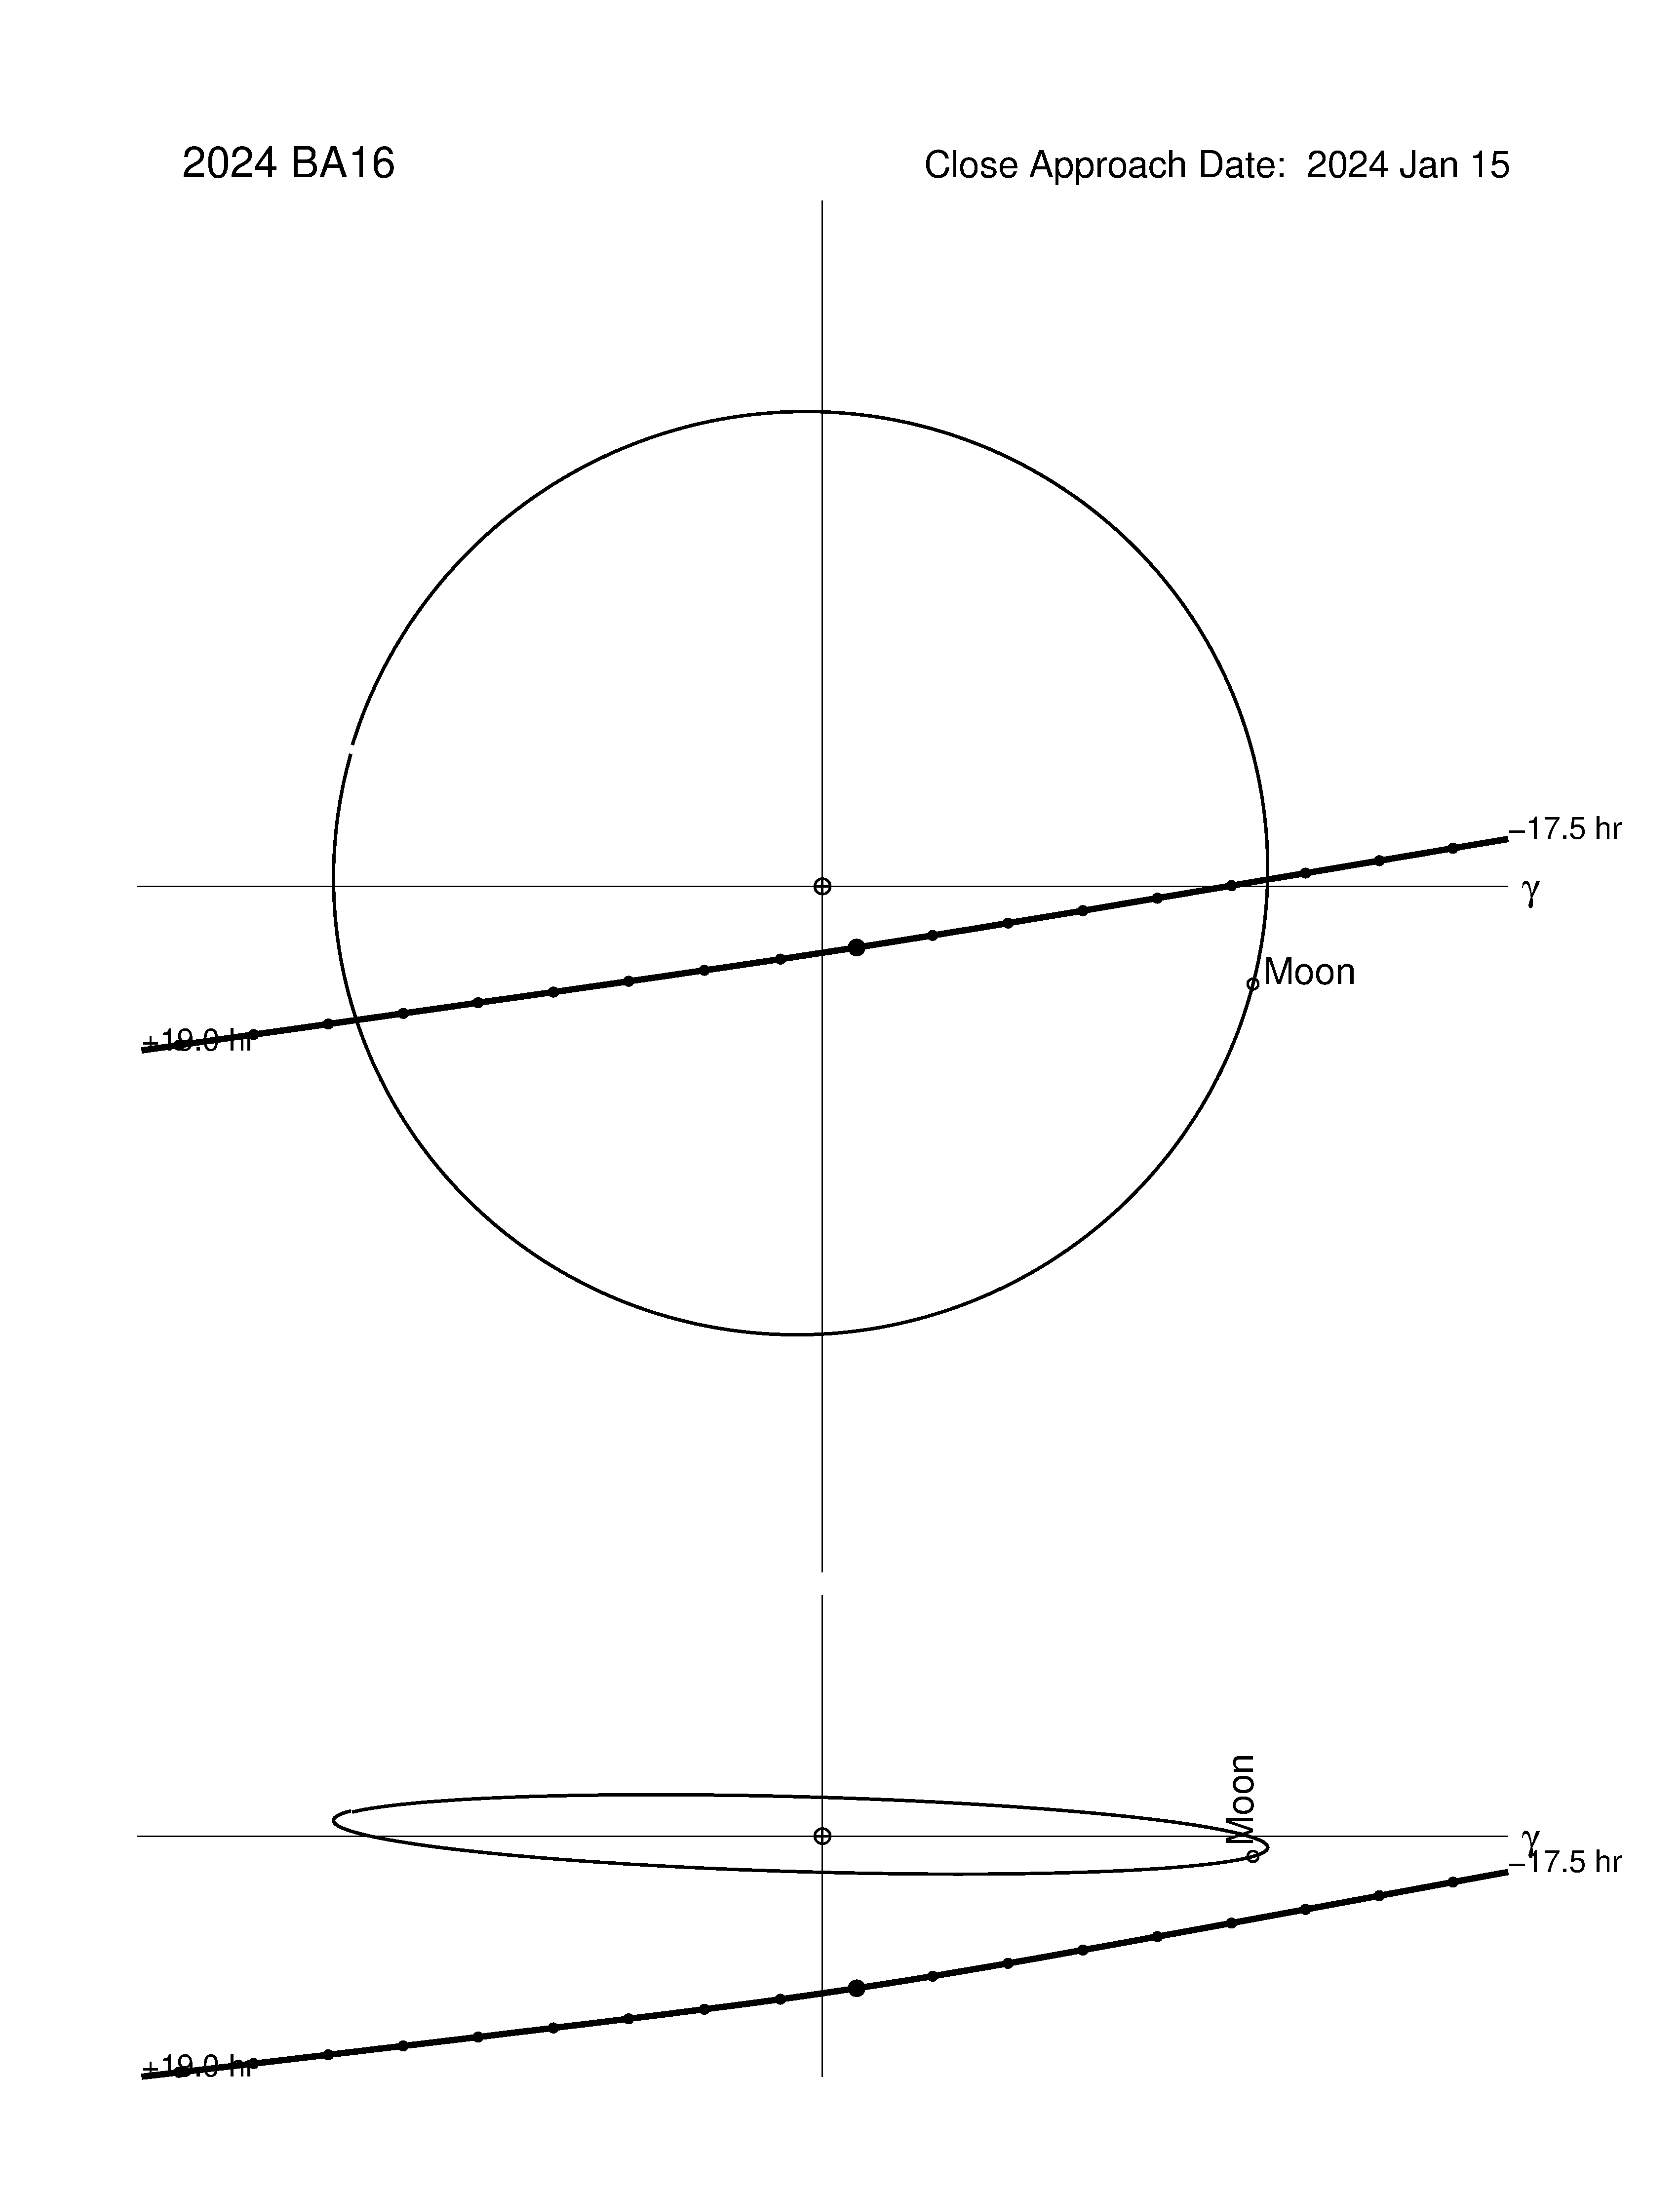 Near-Earth trajectory of 2024 BA16